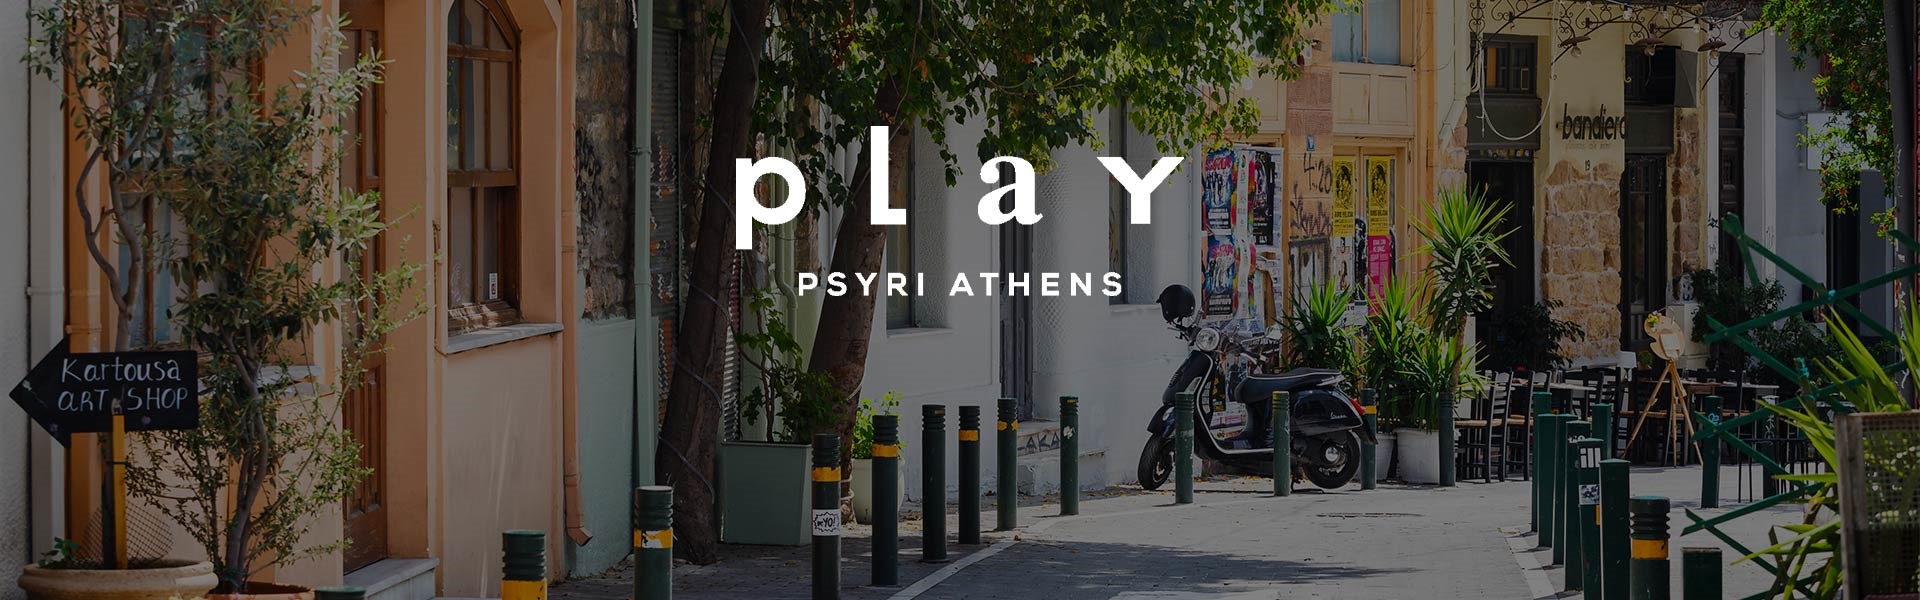 PLAY Psyri Athens